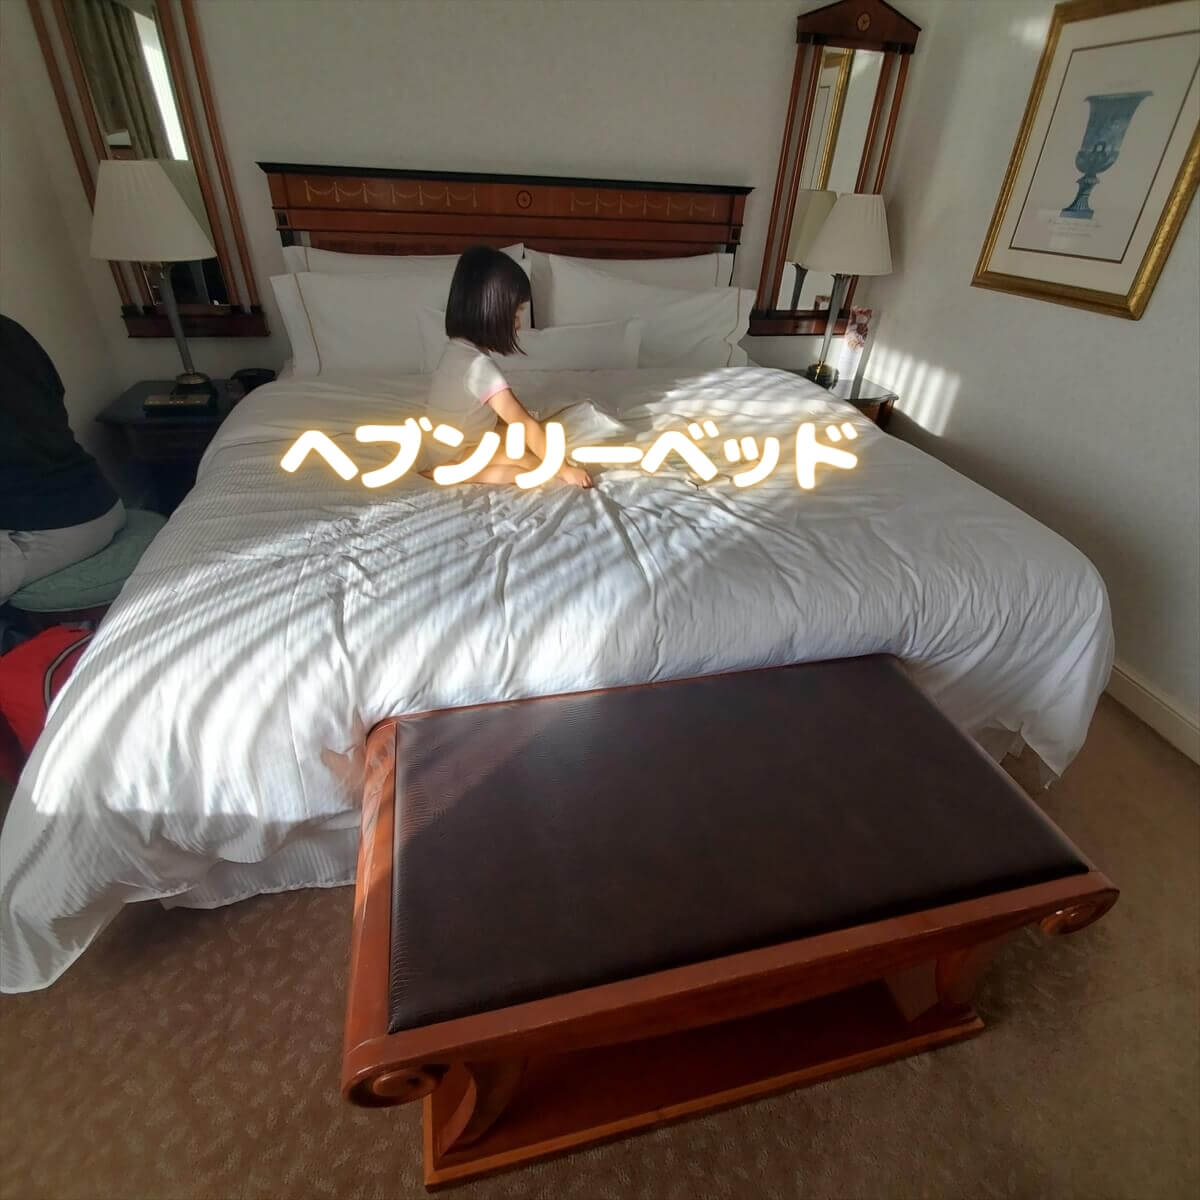 ウェスティンホテル東京のエグゼクティブルームキングの部屋のヘブンリーベッド